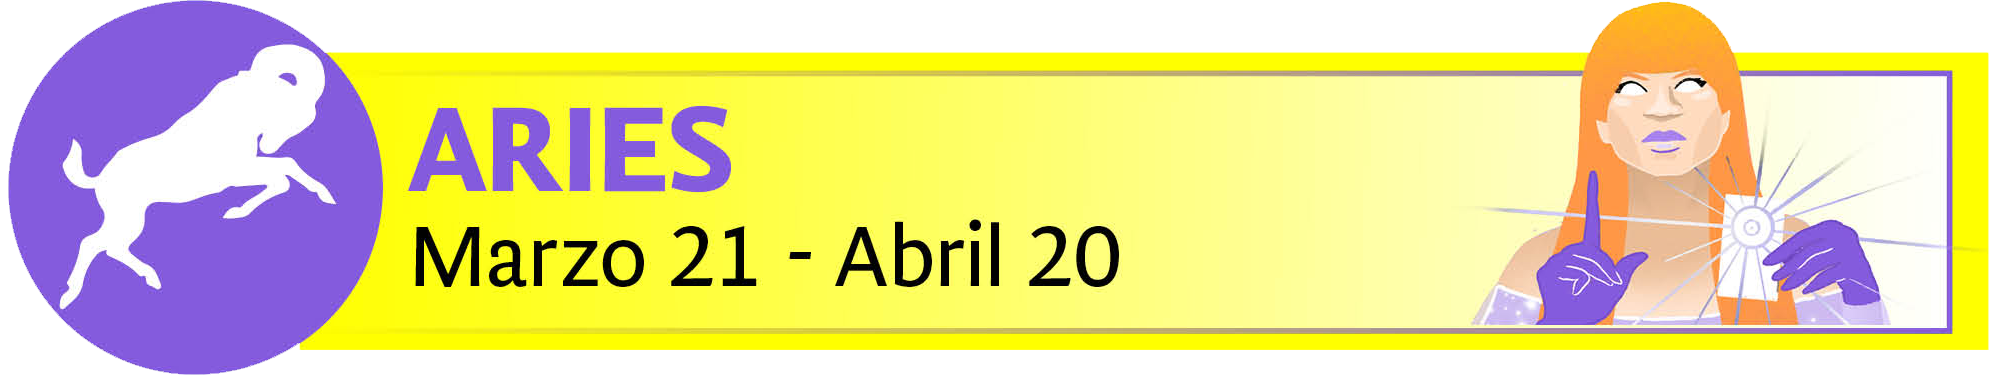 mhoni vidente: los horóscopos del fin de semana del 12 al 14 de abril